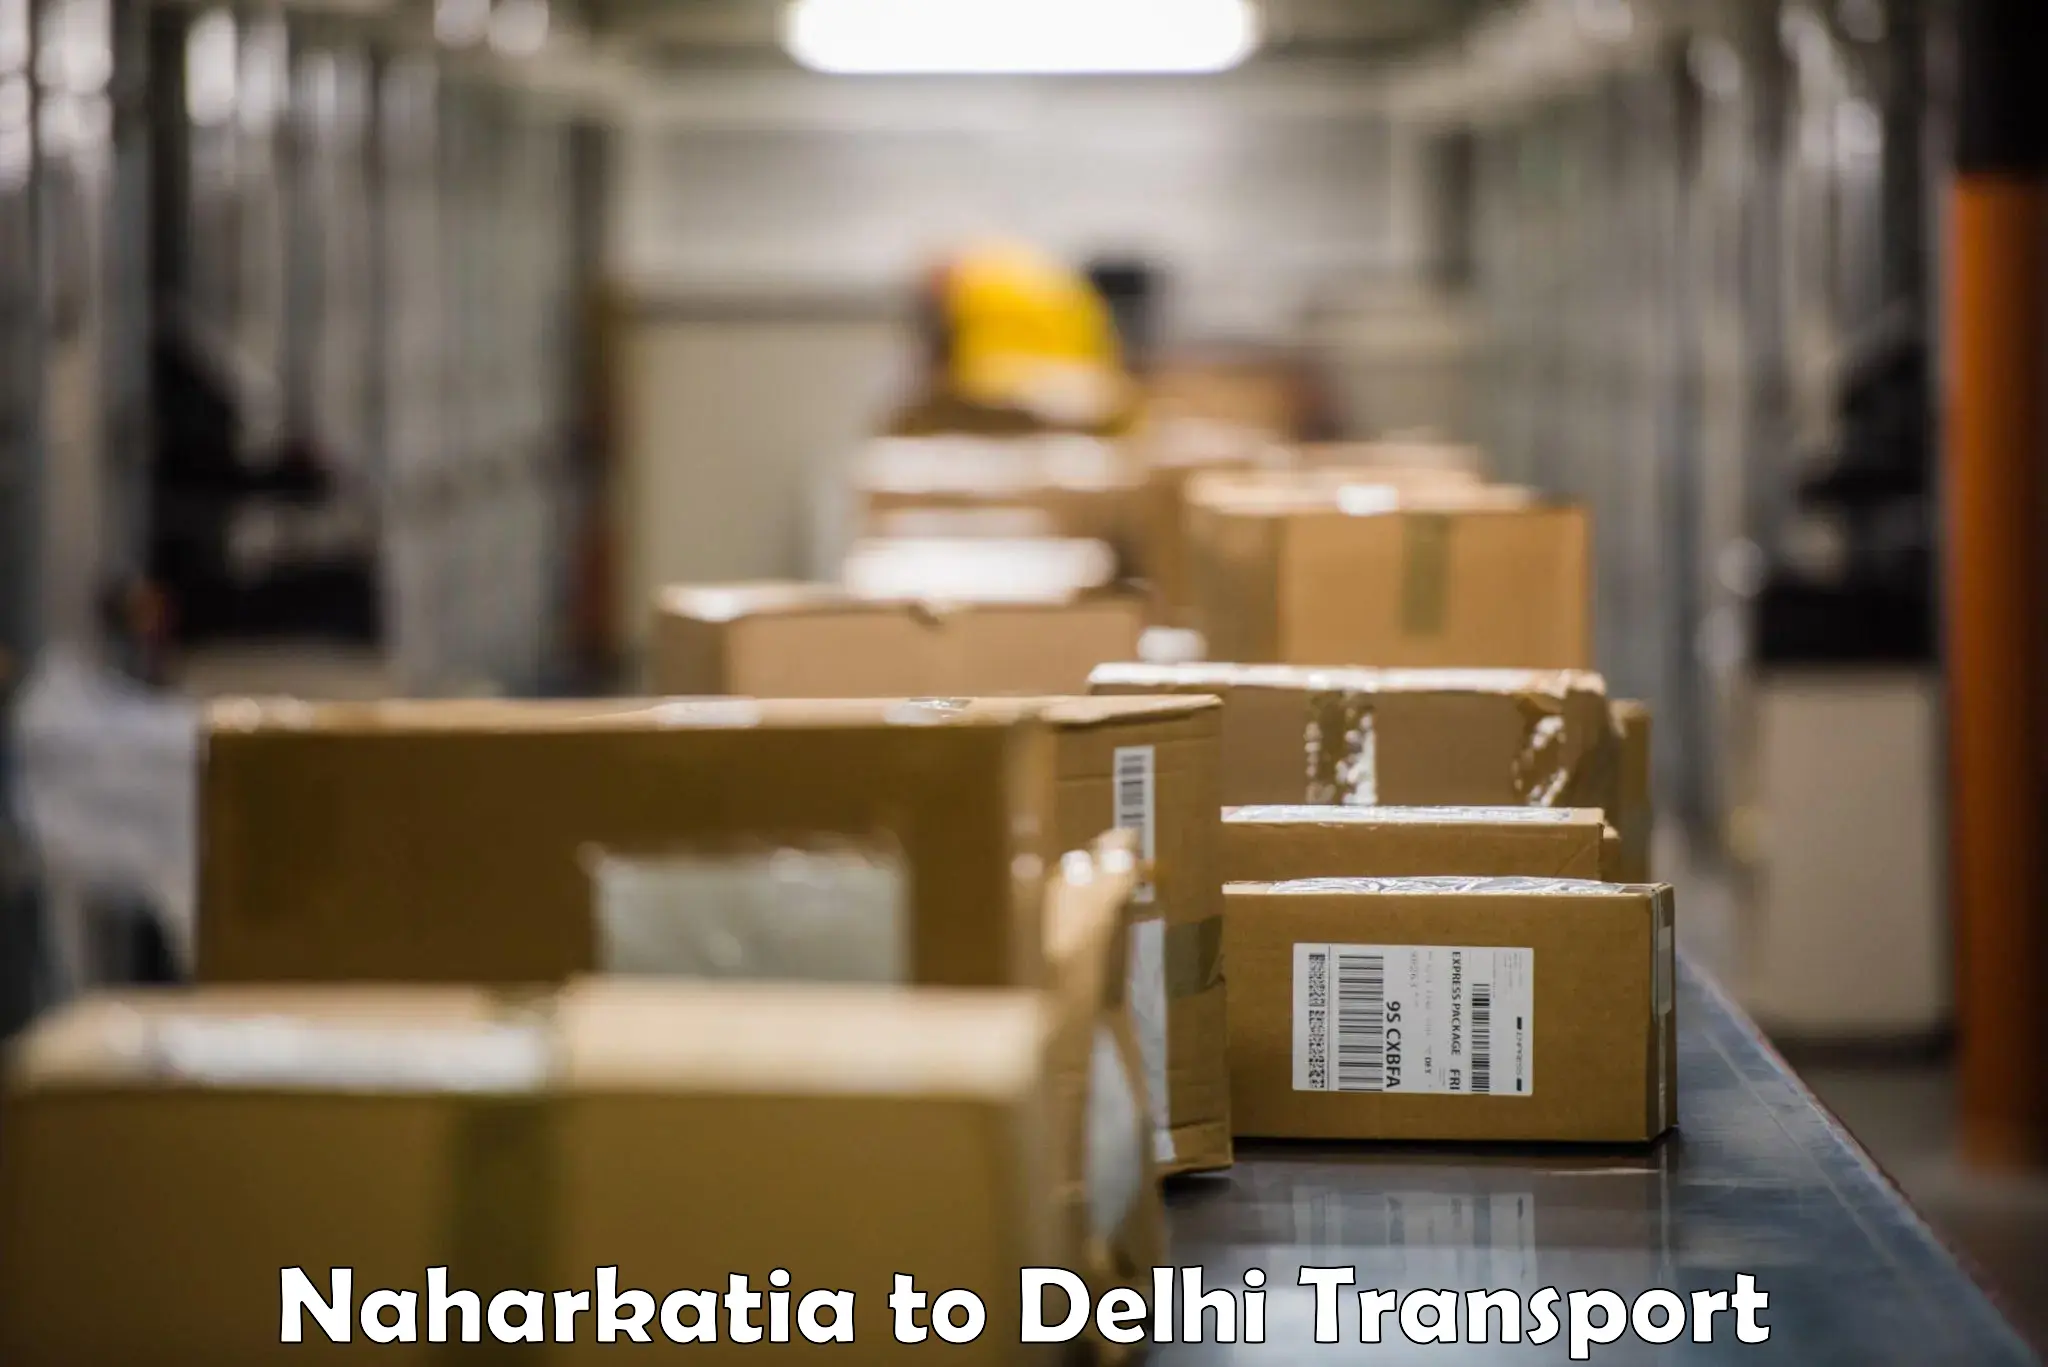 Shipping services Naharkatia to Jawaharlal Nehru University New Delhi